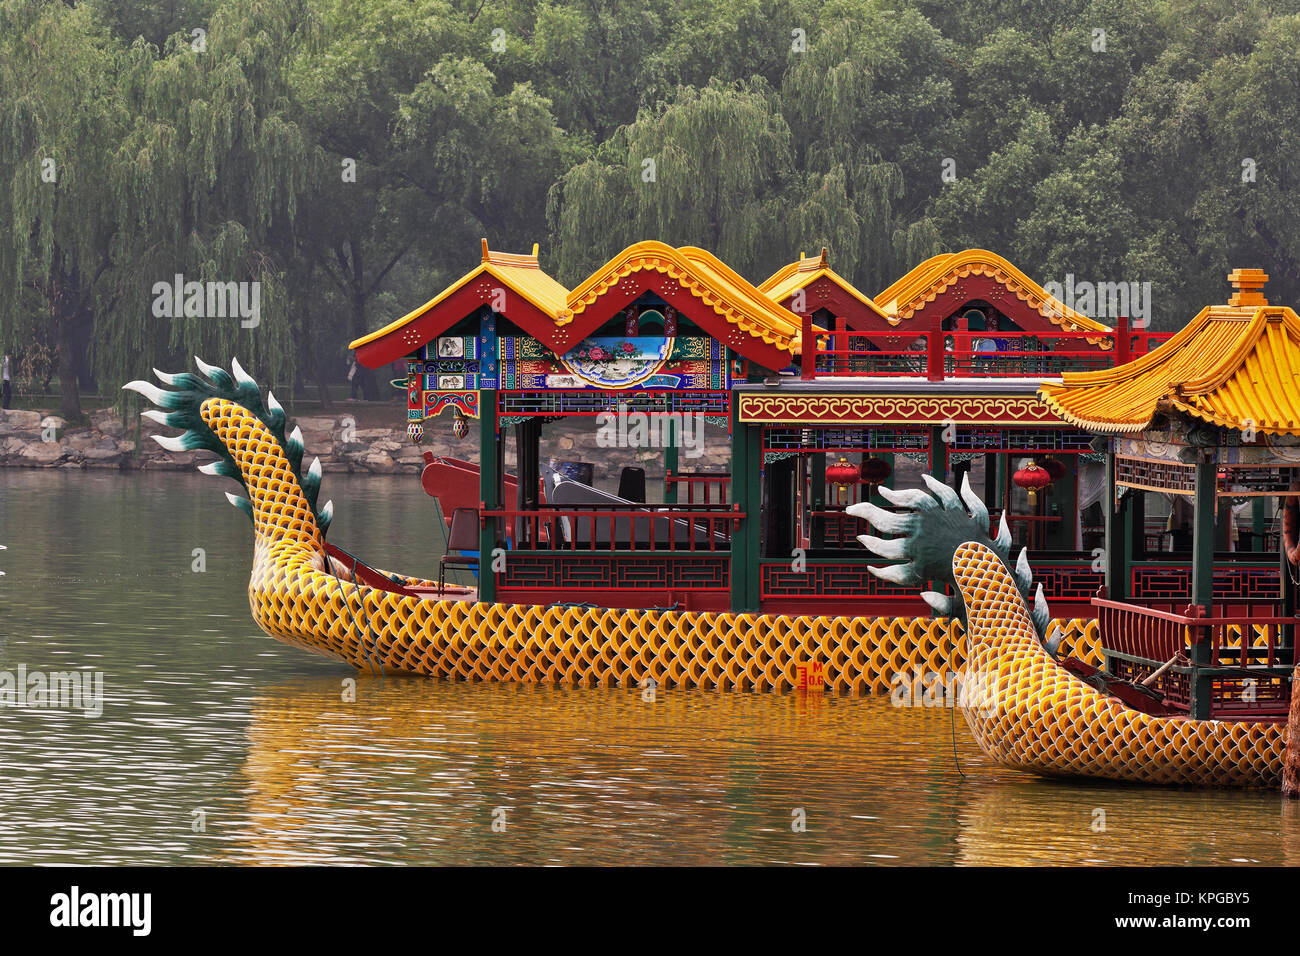 Dragon boat at the Summer Palace, Beijing, China Stock Photo